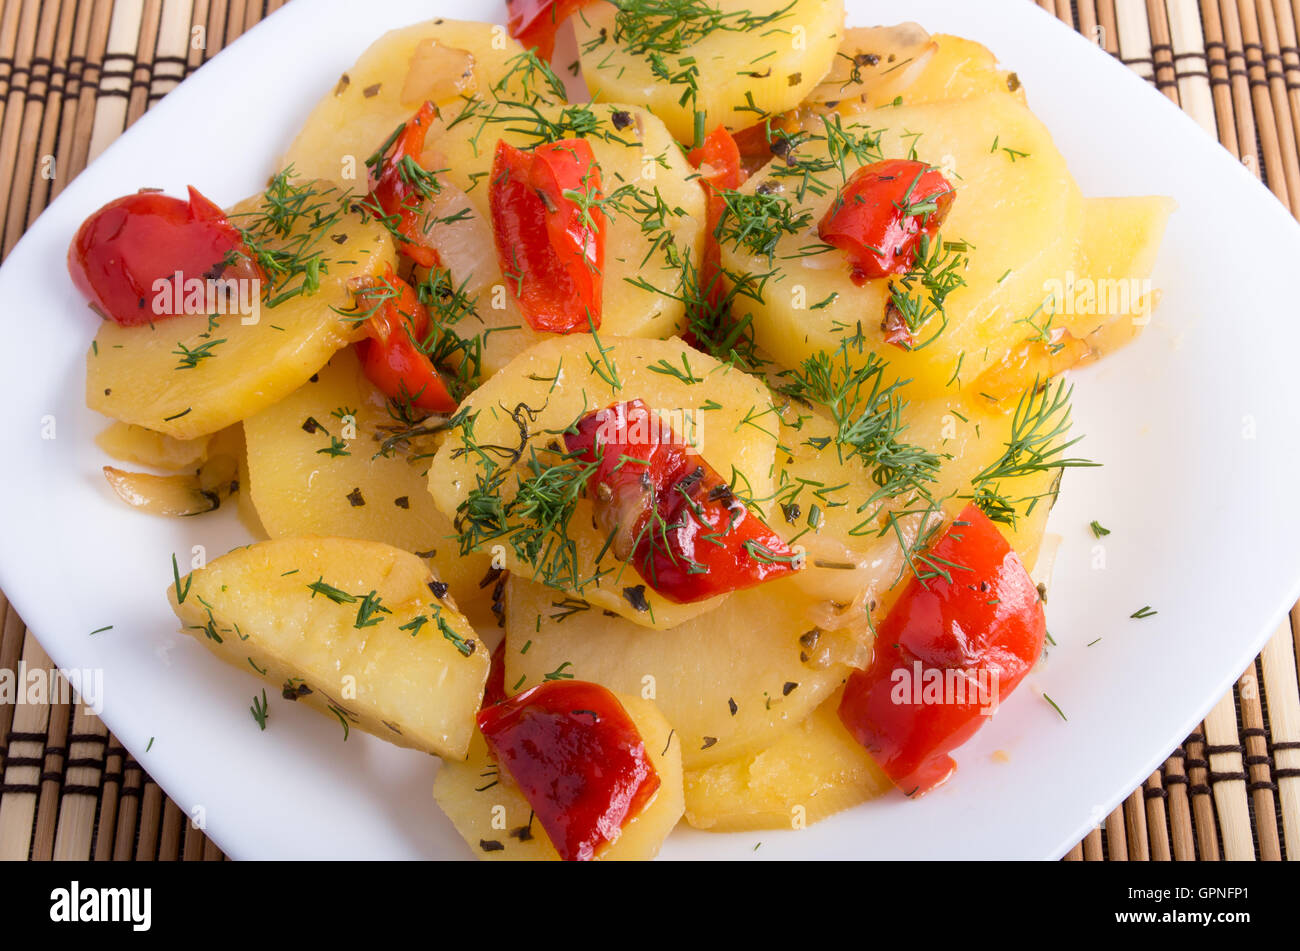 Plan rapproché sur un plat végétarien avec des tranches de pommes de terre cuites et les condiments végétaux sur un fond de bois Banque D'Images